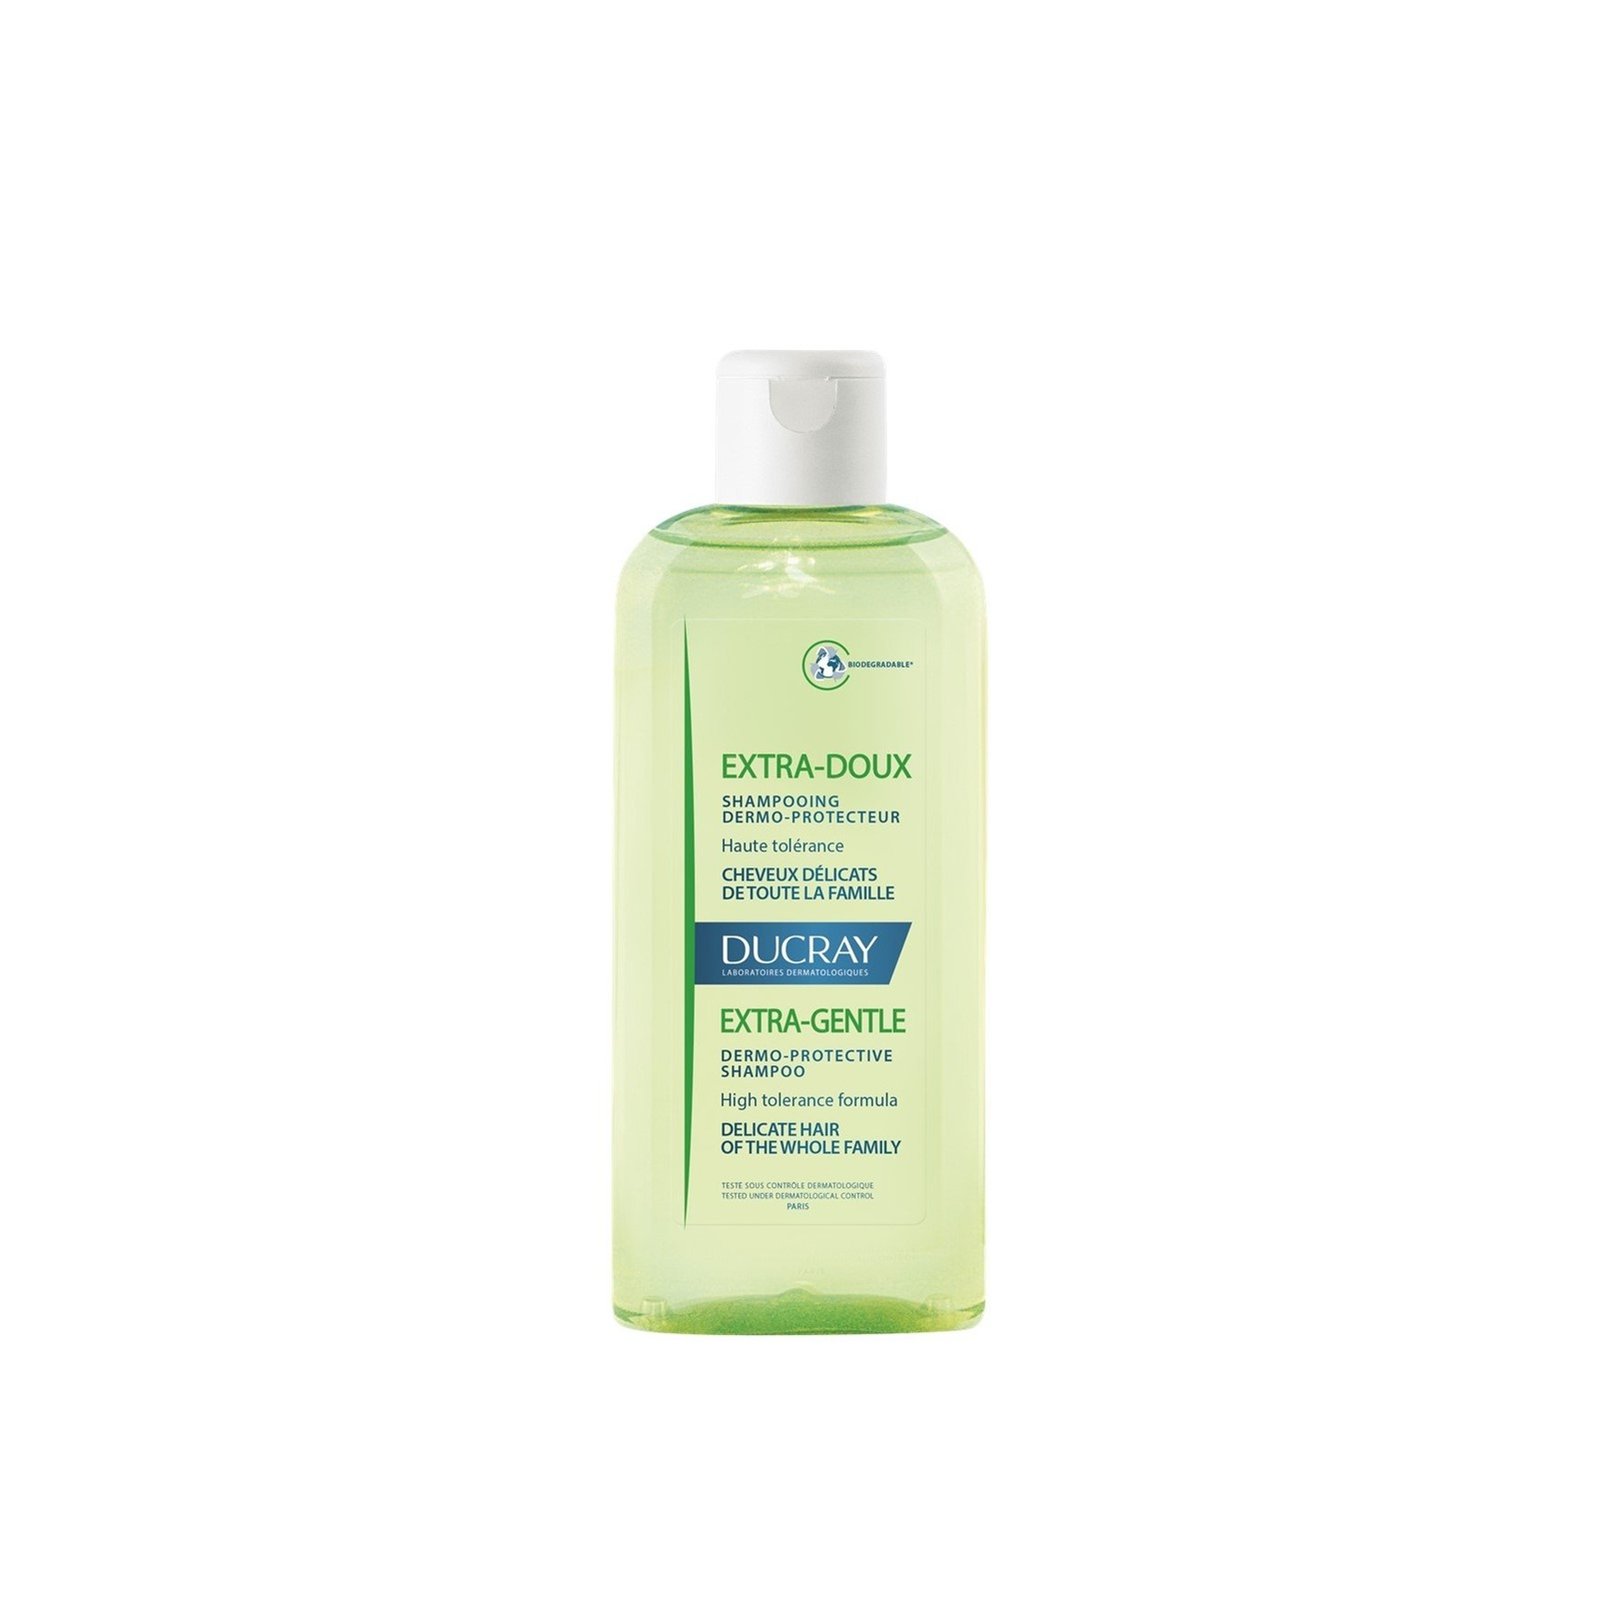 Ducray Extra-Doux Dermo-Protective Shampoo 200ml (6.76 fl oz)